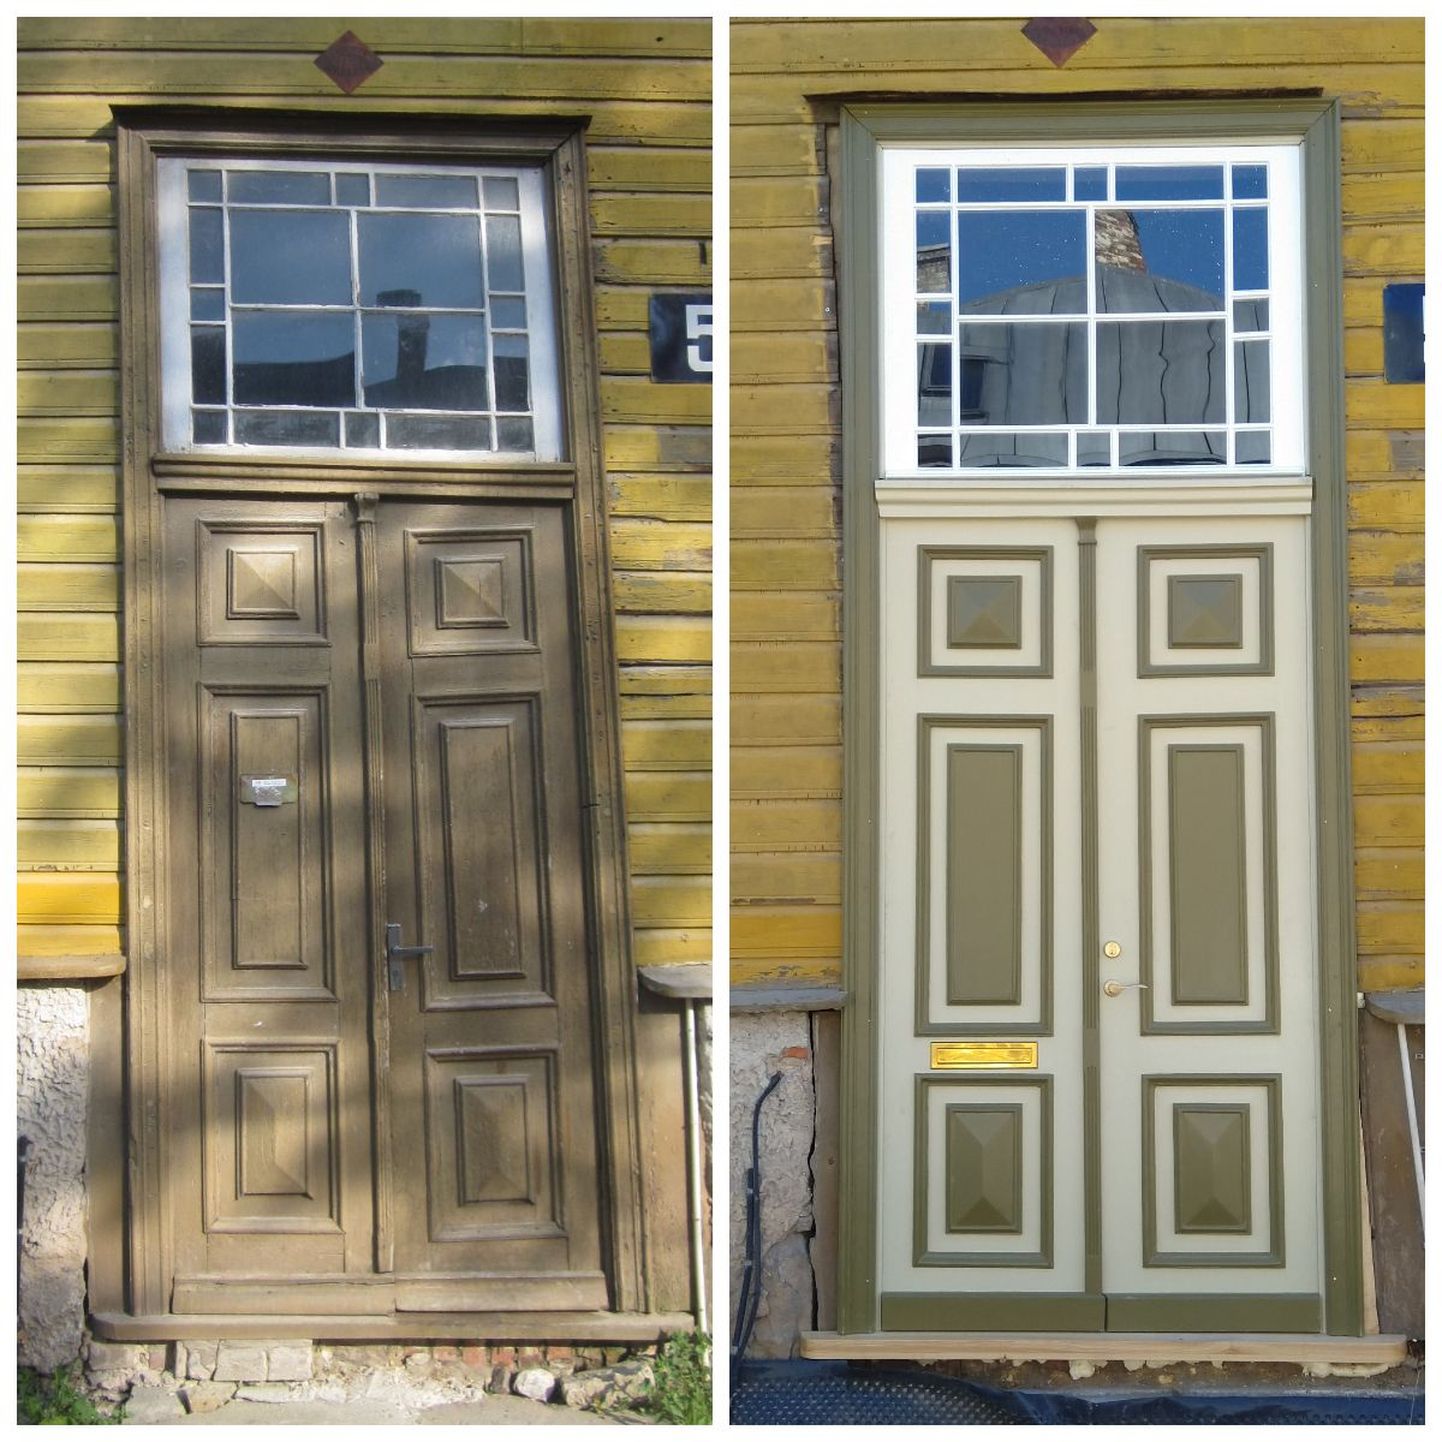 Marja 5 uks enne ja pärast restaureerimist.